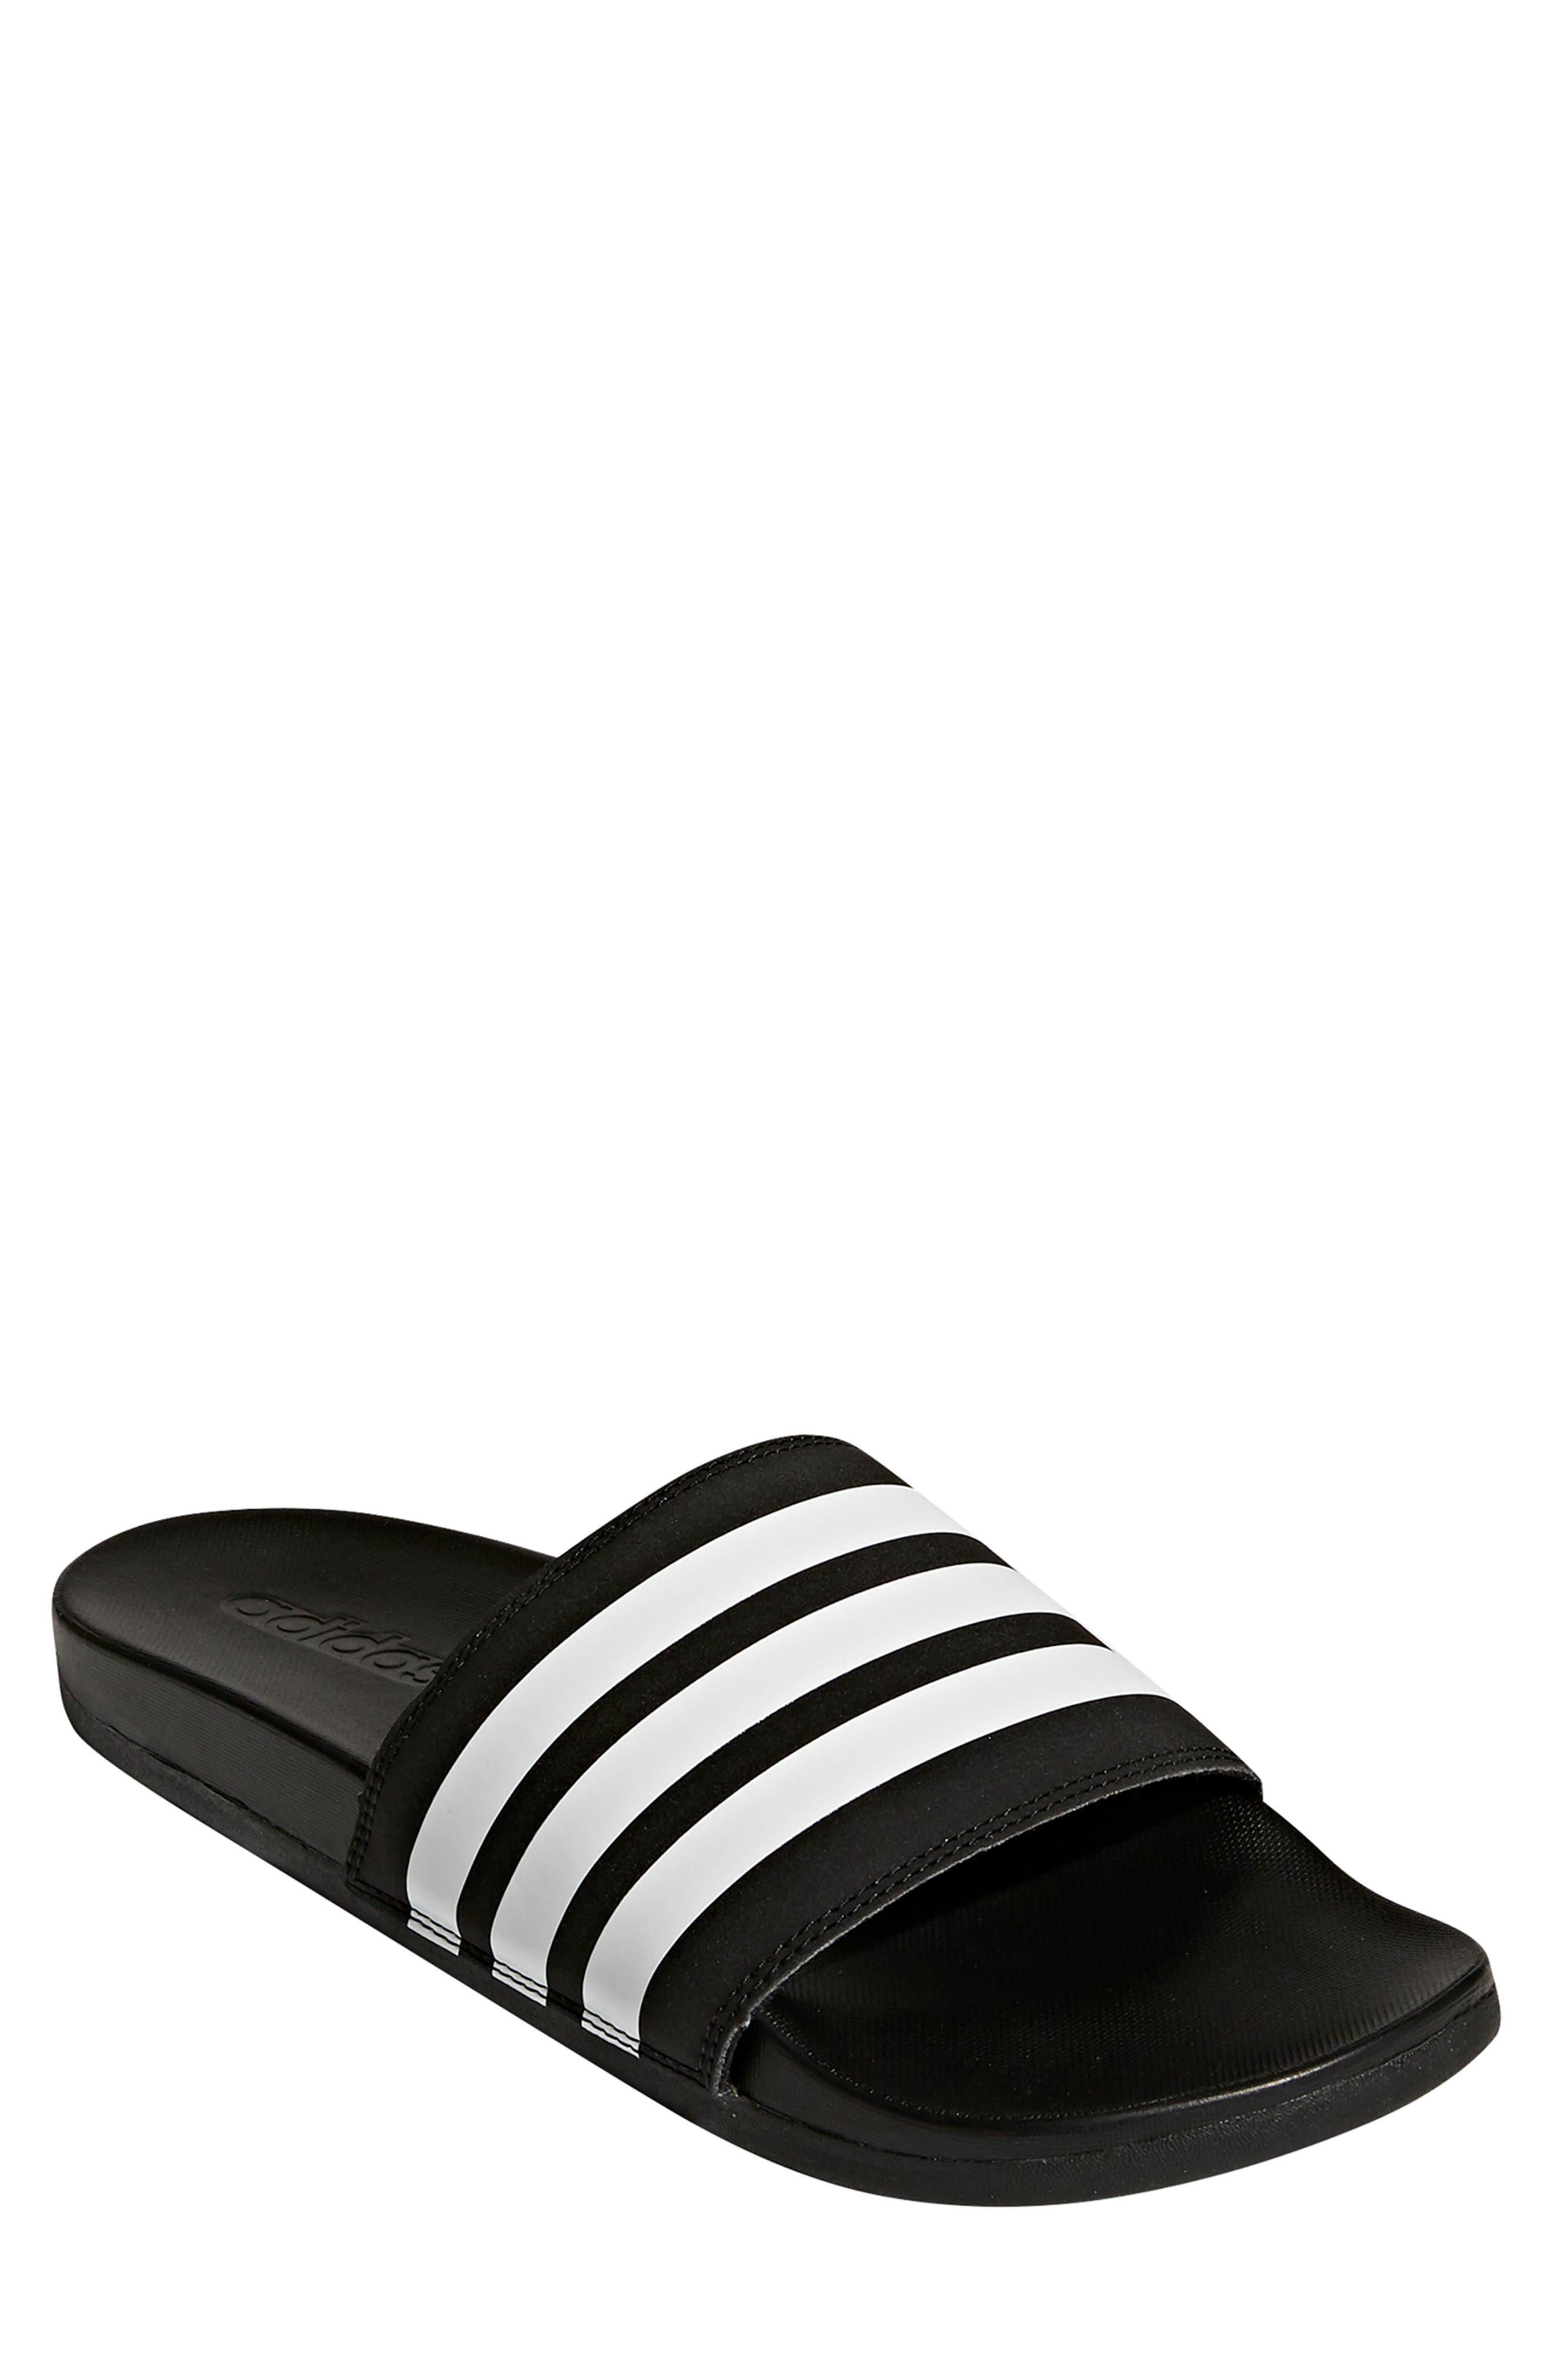 Men's adidas Sandals, Slides \u0026 Flip-Flops | Nordstrom